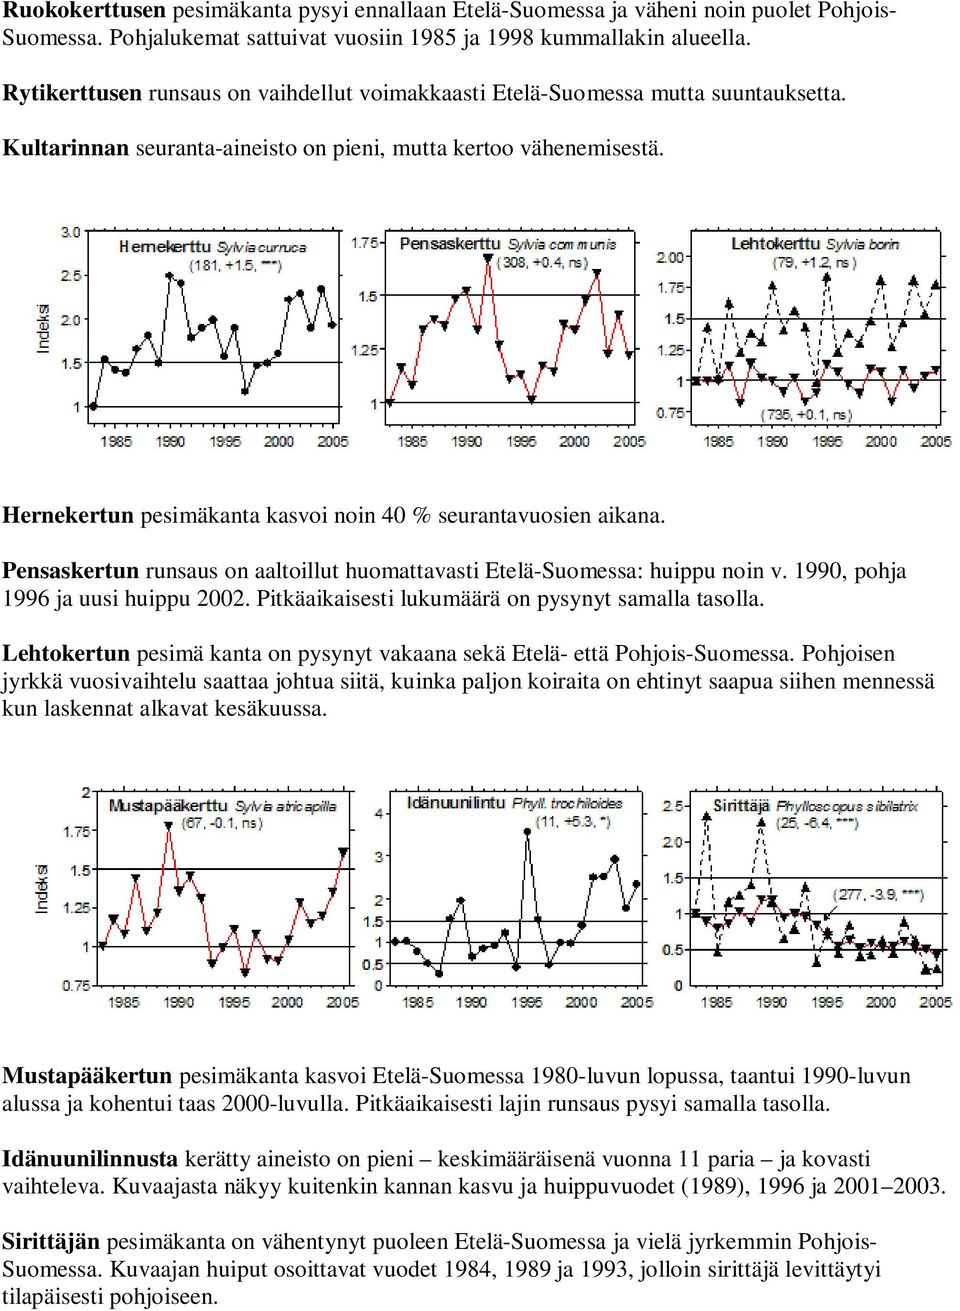 Hernekertun pesimäkanta kasvoi noin 40 % seurantavuosien aikana. Pensaskertun runsaus on aaltoillut huomattavasti Etelä-Suomessa: huippu noin v. 1990, pohja 1996 ja uusi huippu 2002.